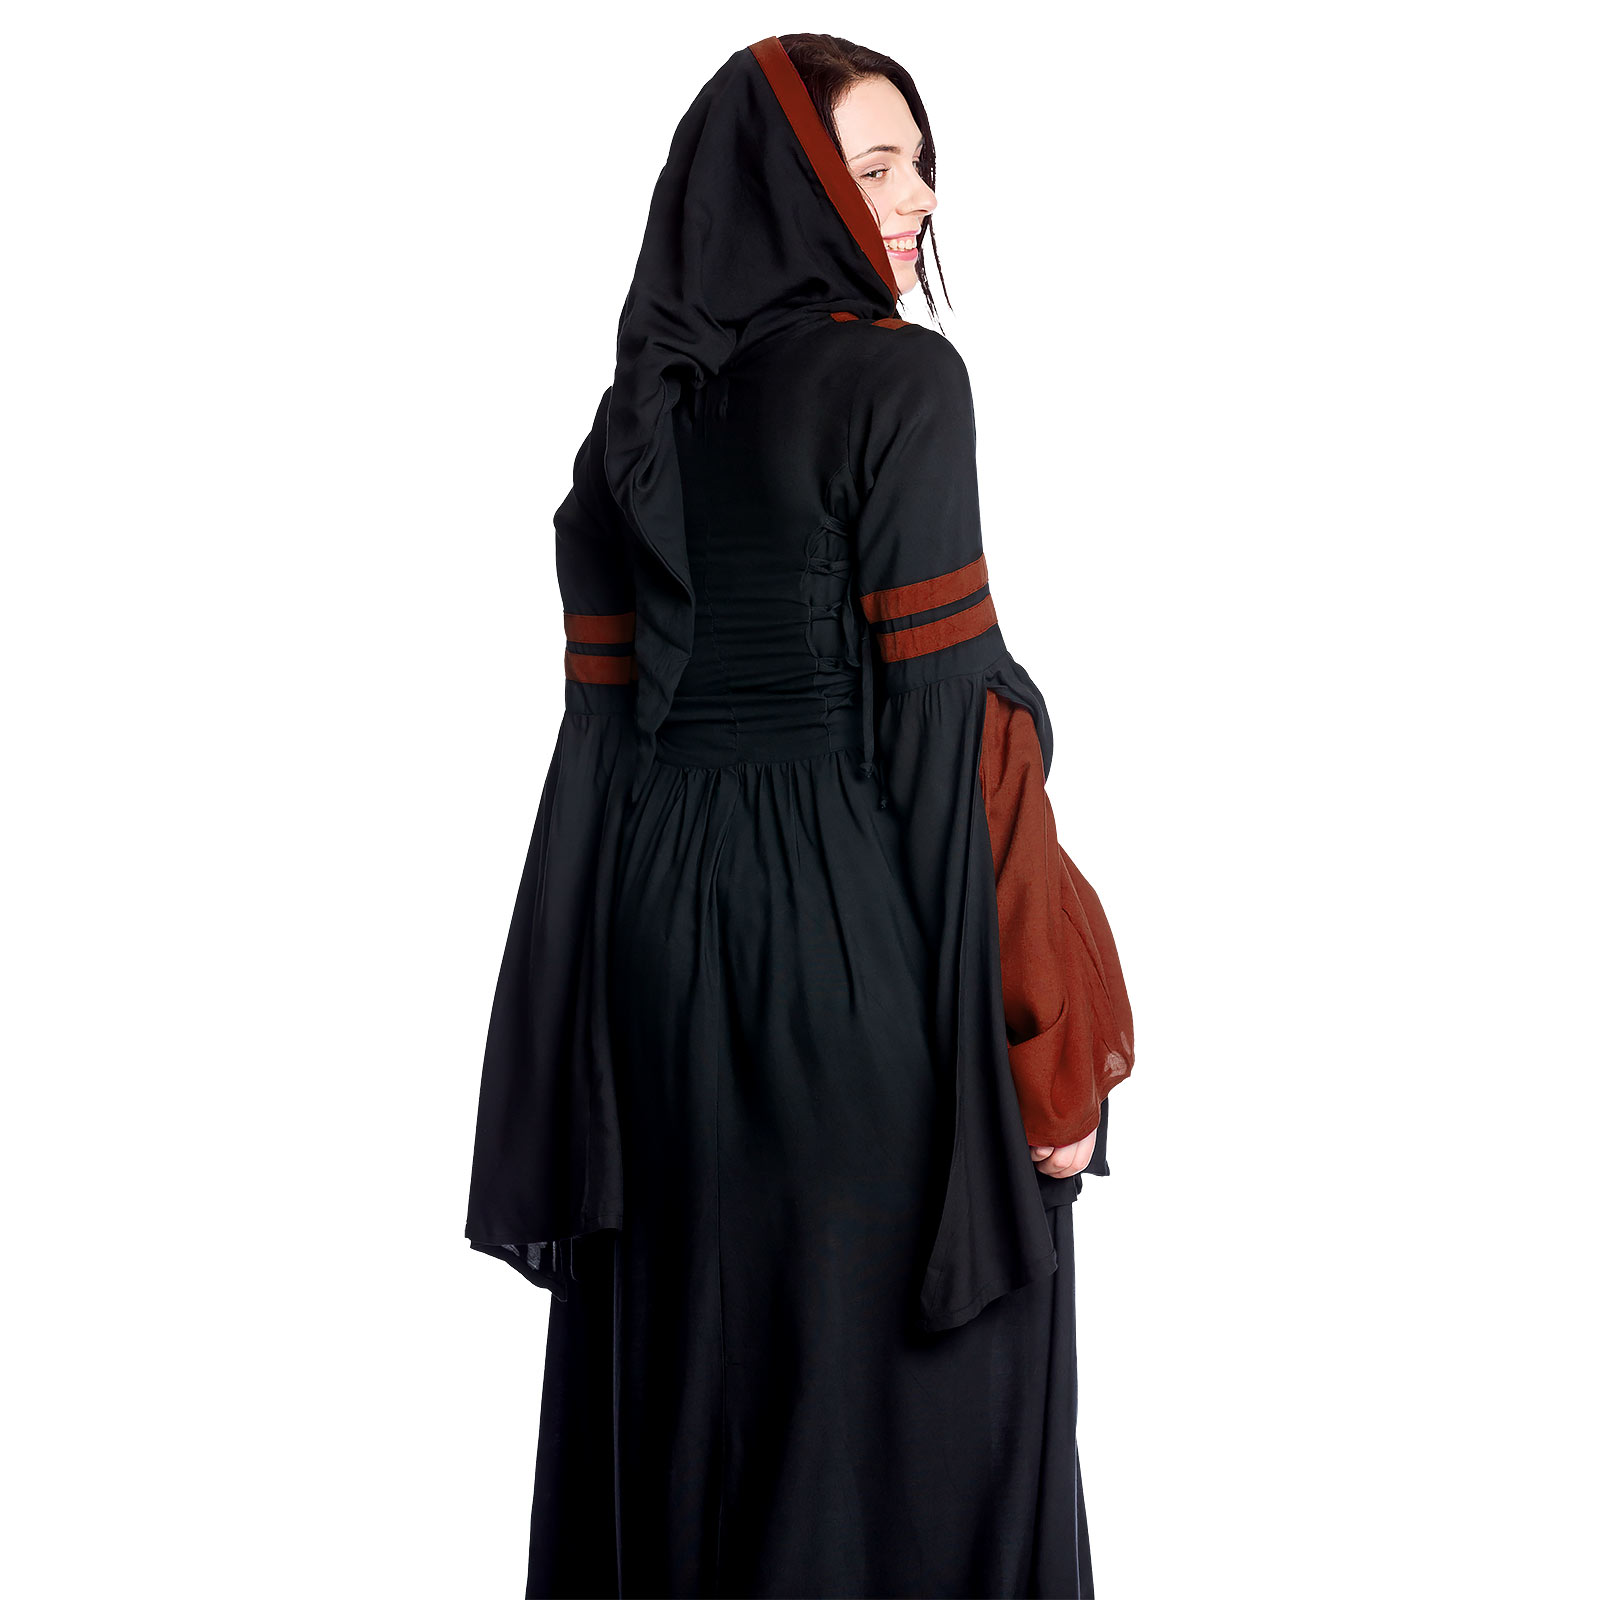 Mittelalter Kapuzenkleid Isolde schwarz-rot